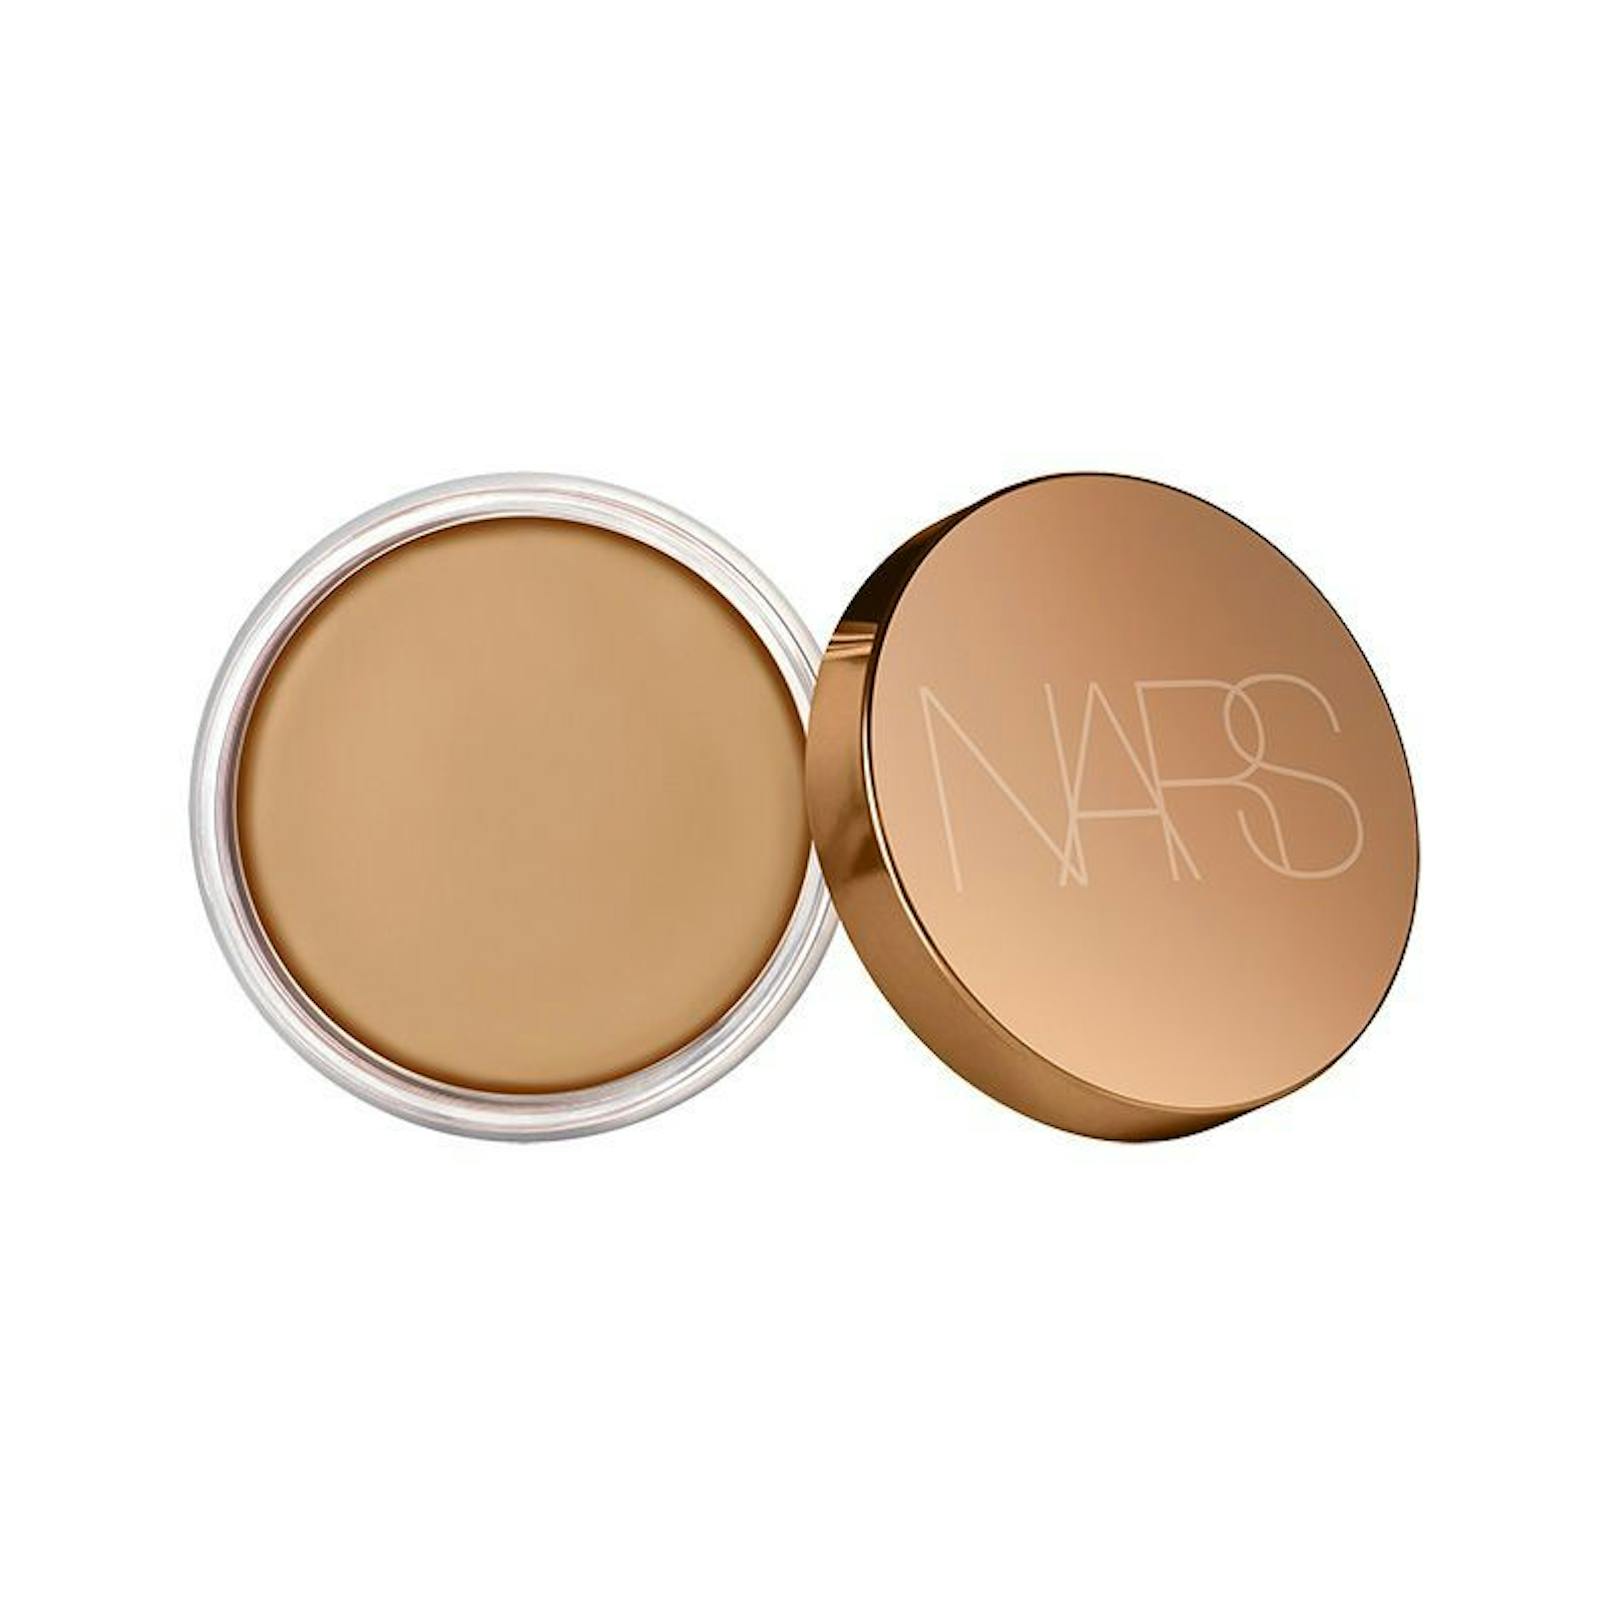 Beauty-Marke NARS hat Produkte für den Bräutigam. Dazu gibt es Cream Bronzer für die Wangenknochen, Augenbrauenstift und den Lipbalm "Orgasm".